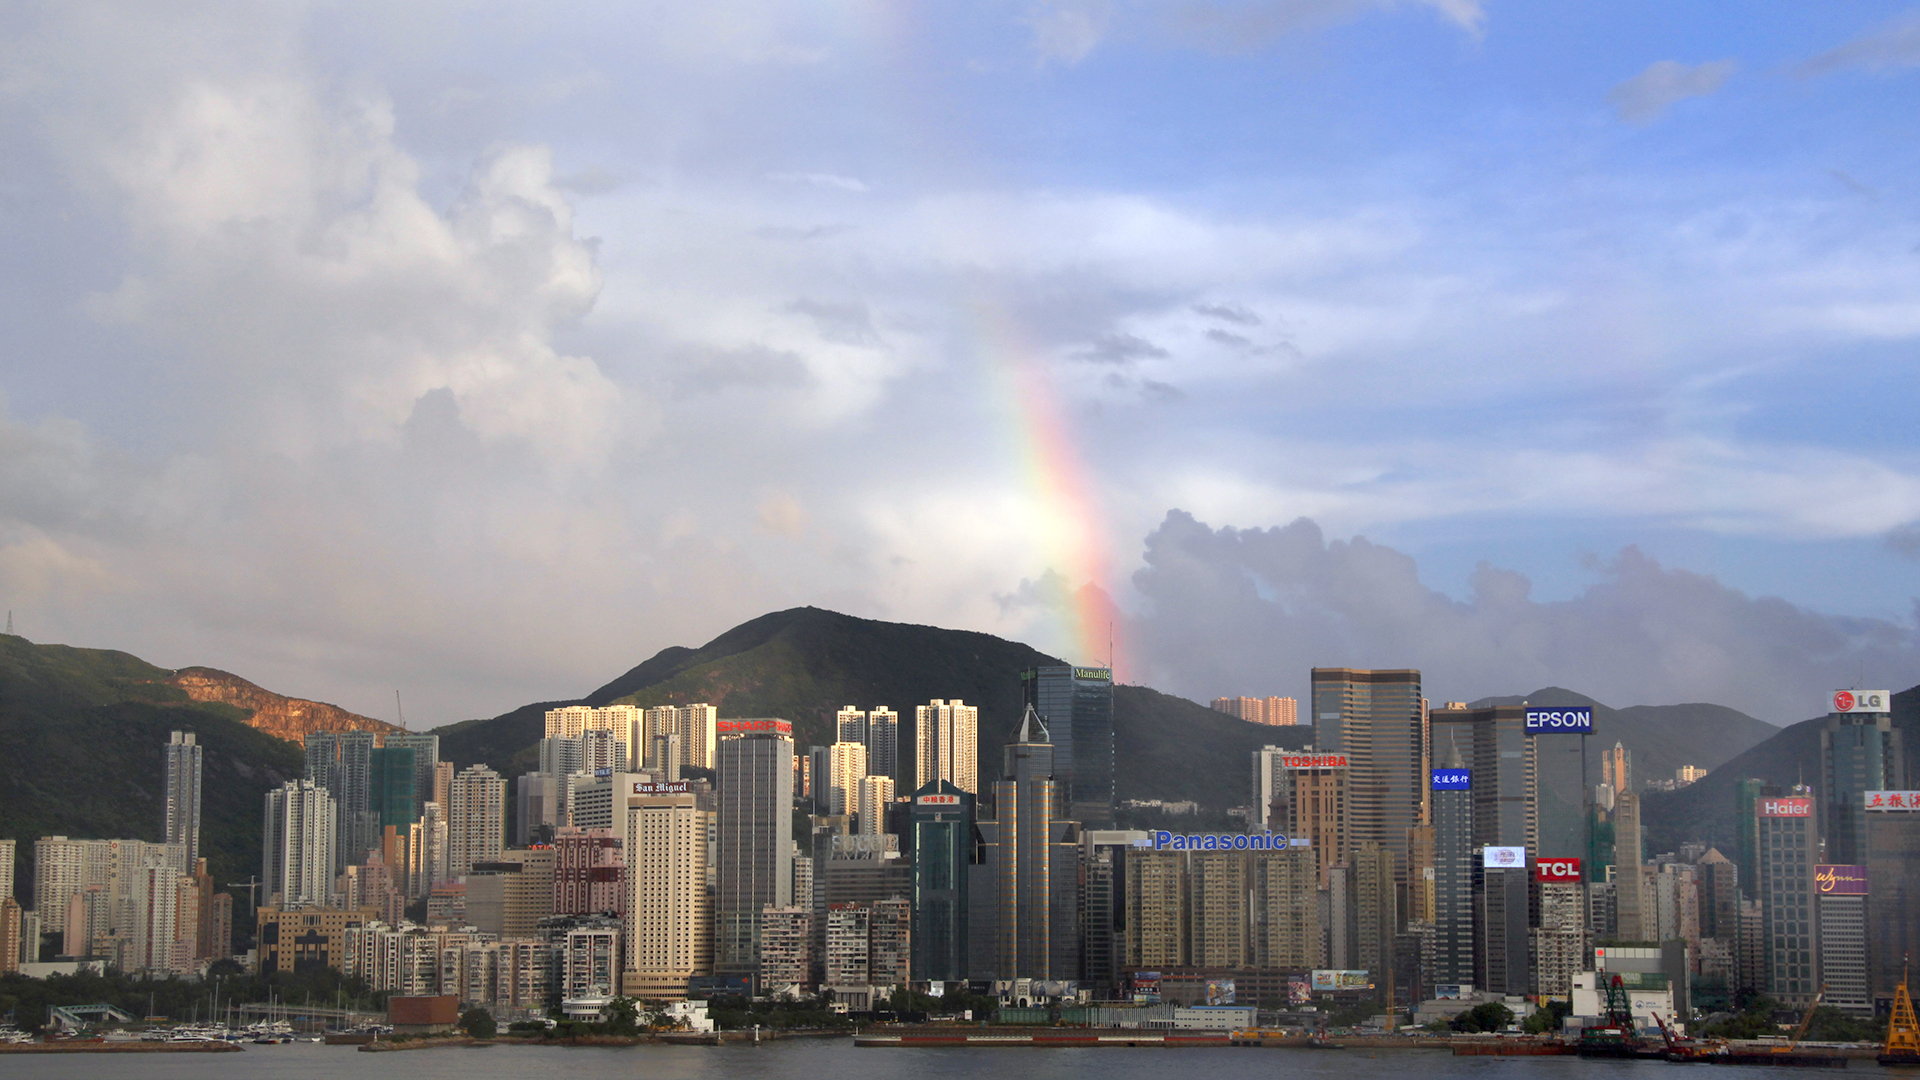 Die Skyline von Hongkong  - dahinter ein Regenbogen | picture alliance / ZB